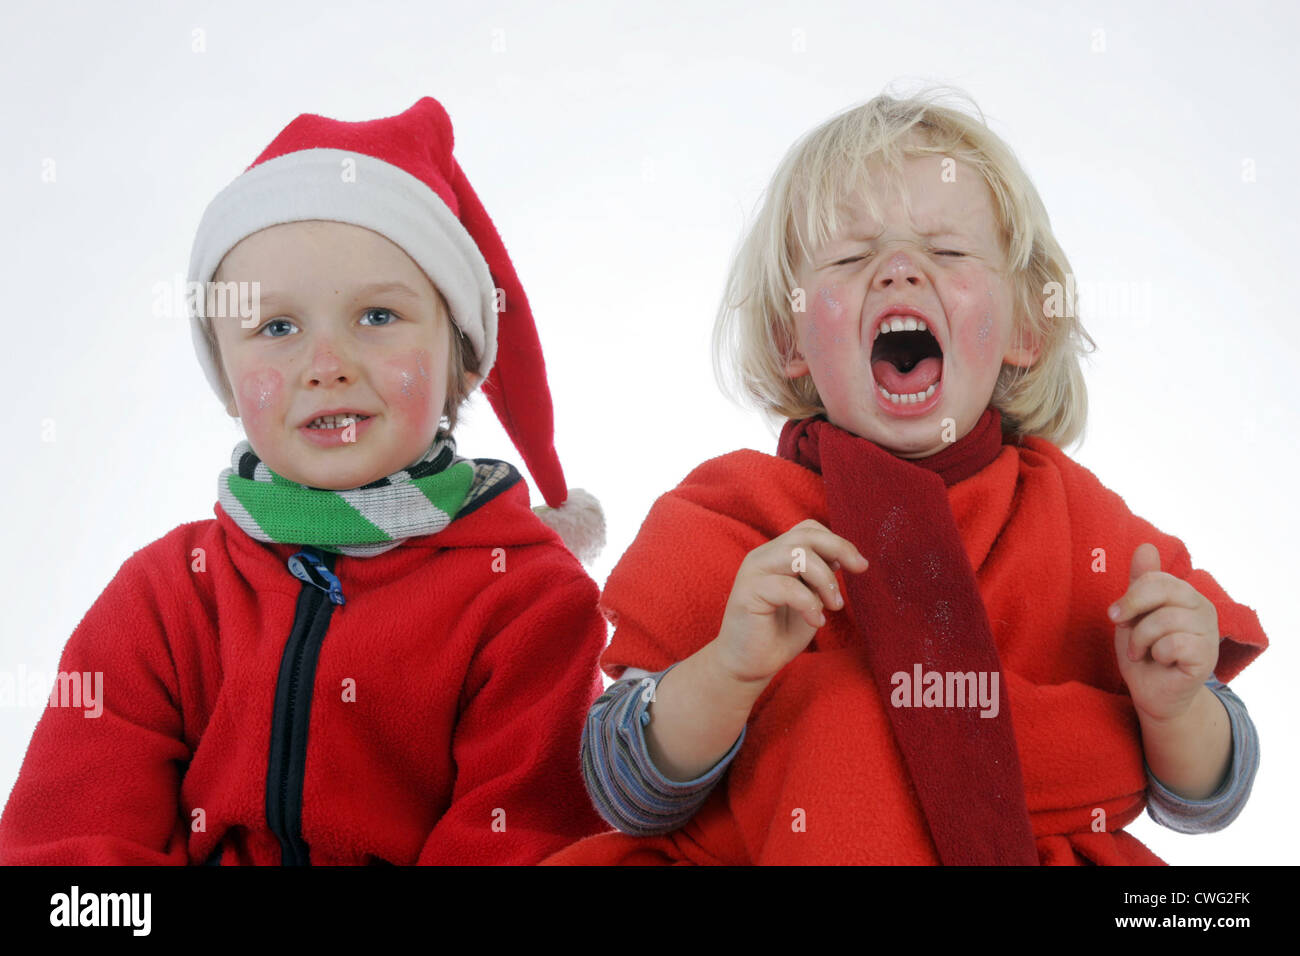 Berlino, i bambini vestiti come Weihnachtsmaenner Foto Stock